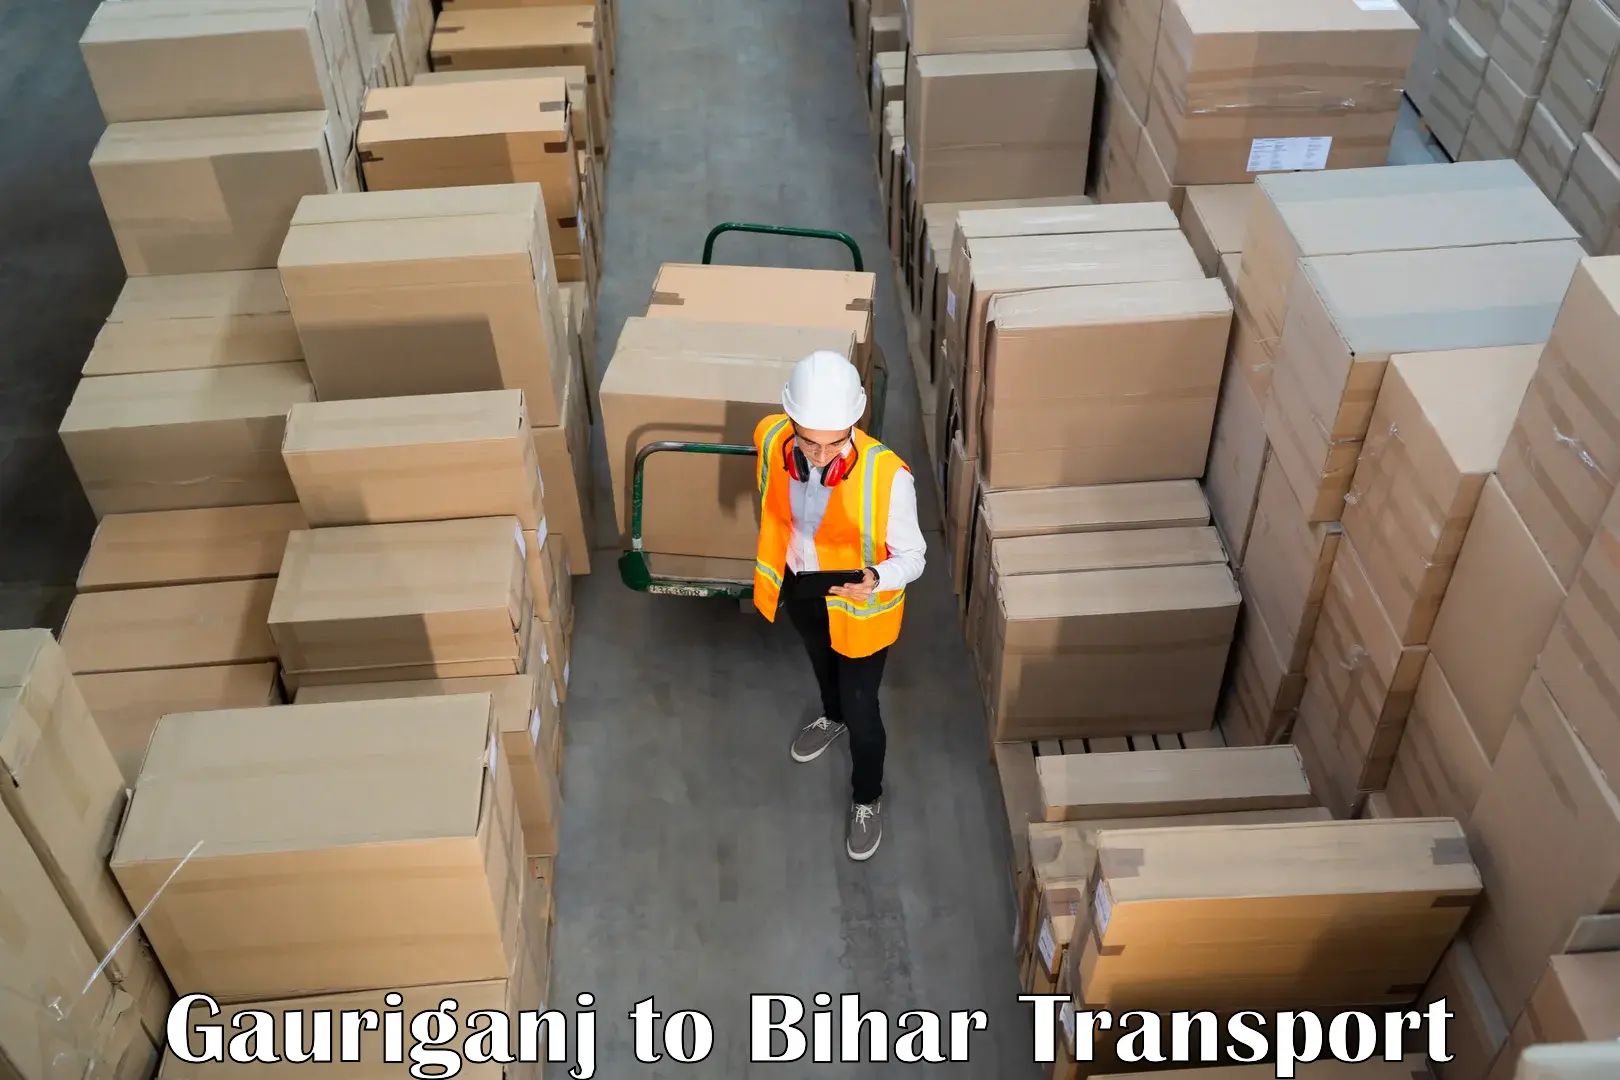 Door to door transport services Gauriganj to Biraul